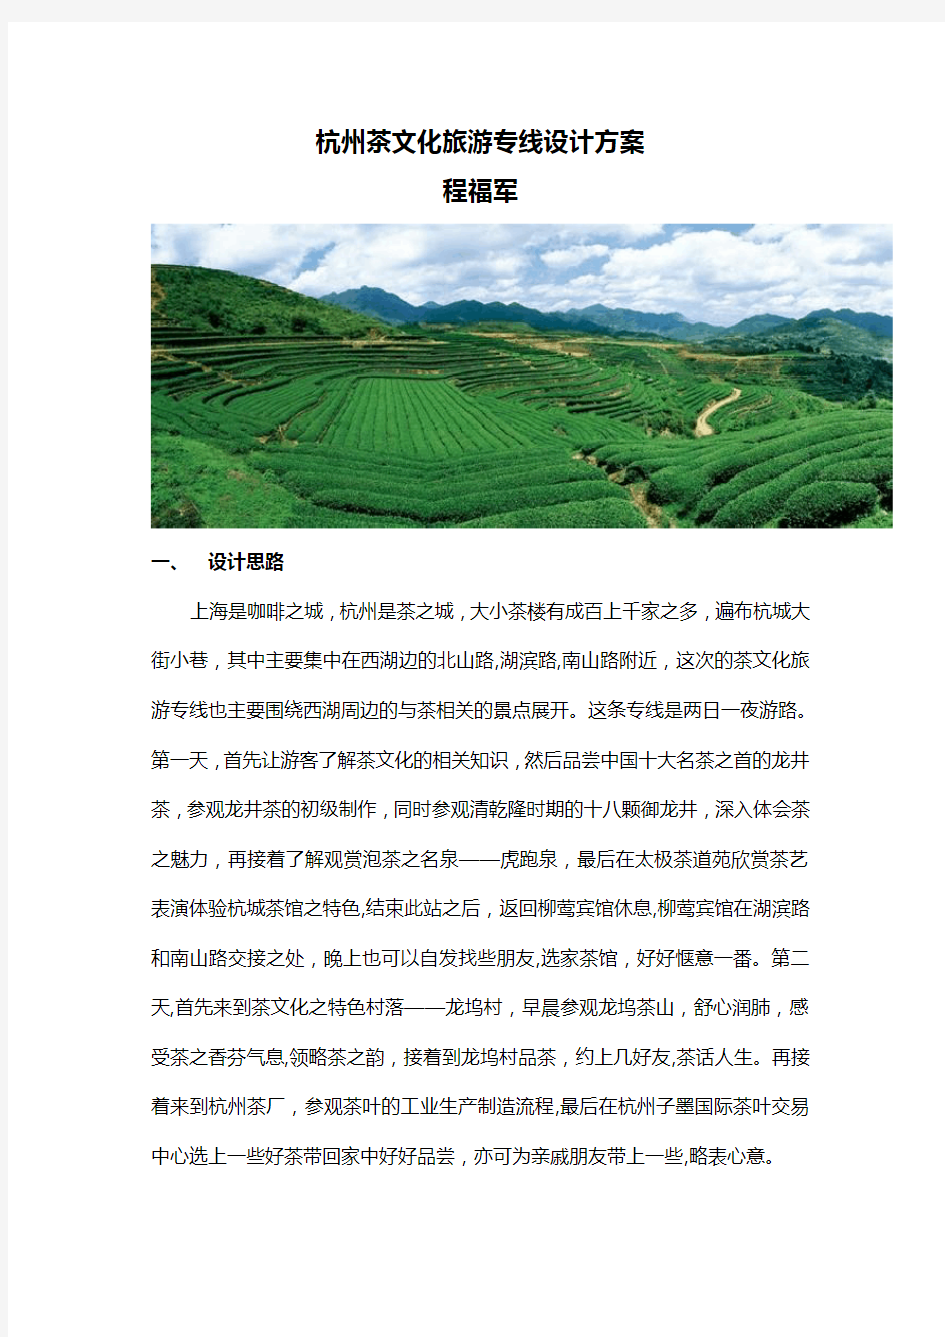 杭州茶文化旅游专线设计方案